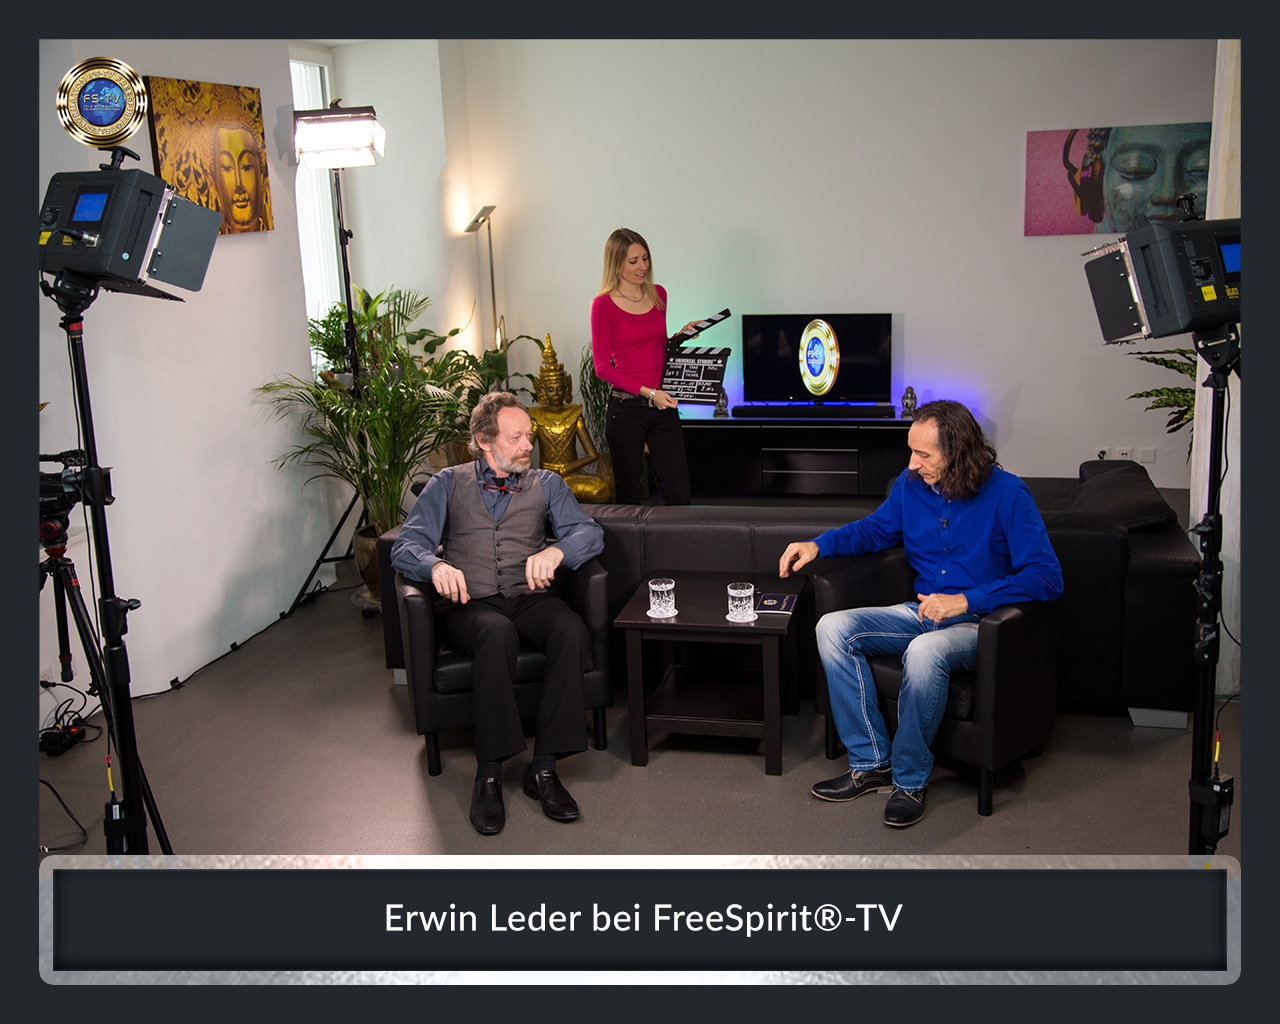 FS-TV-Bildergallerie-Erwin-Leder3